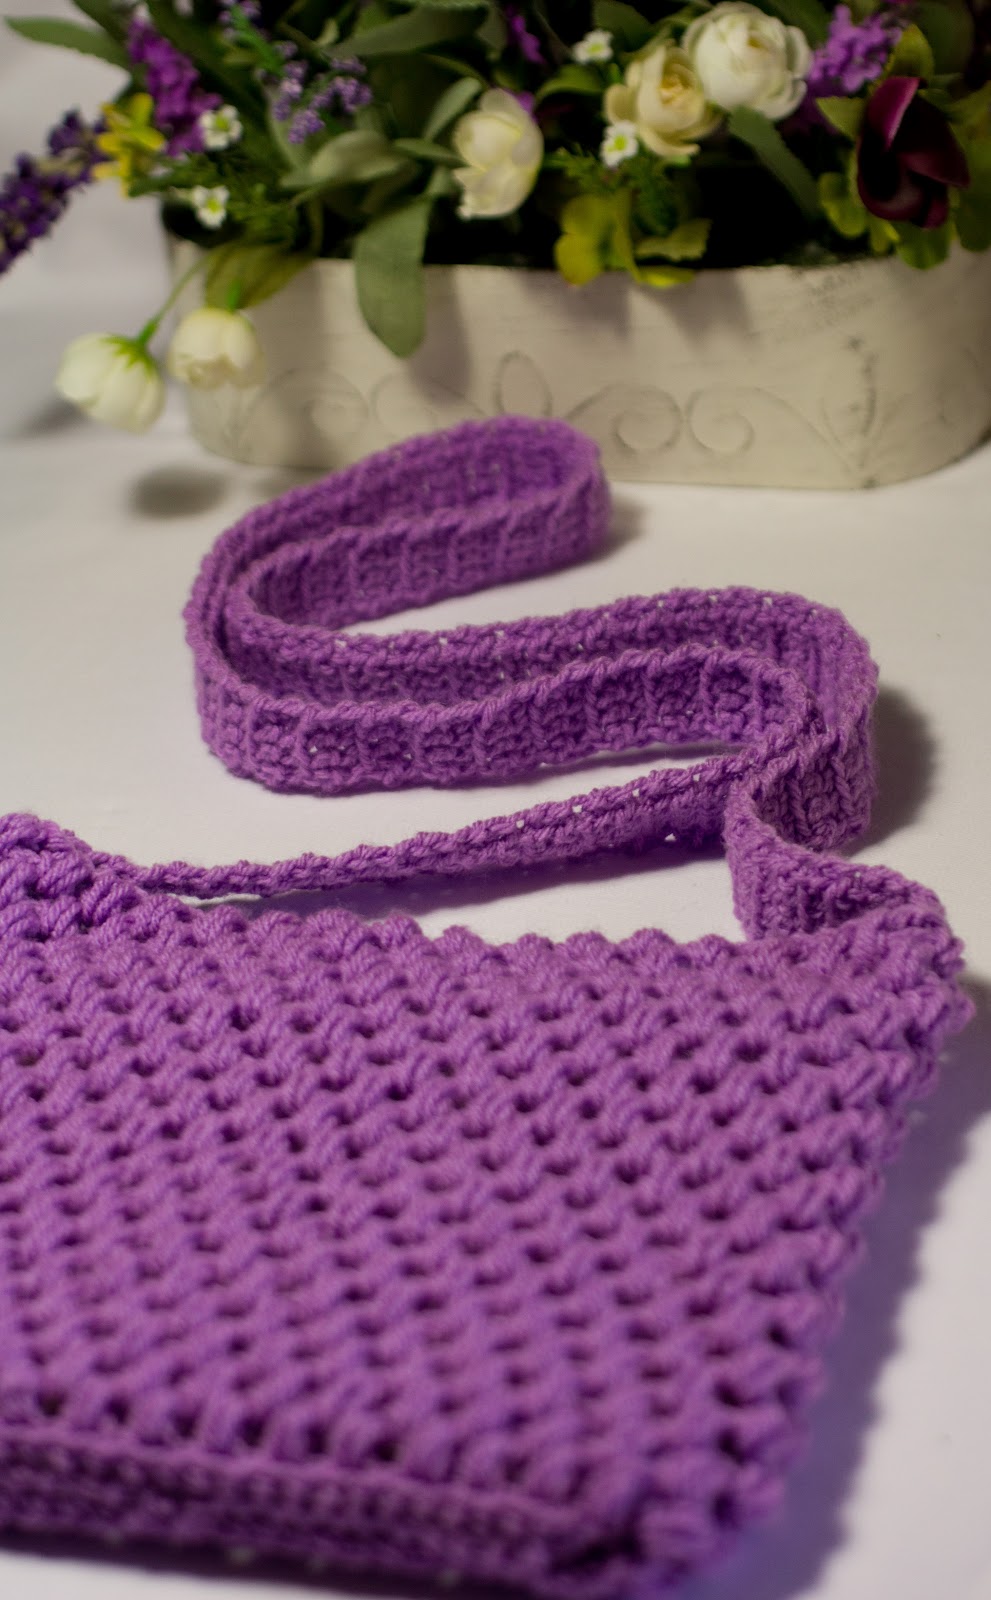 Easy Tote Bag Crochet Pattern via Hopeful Honey